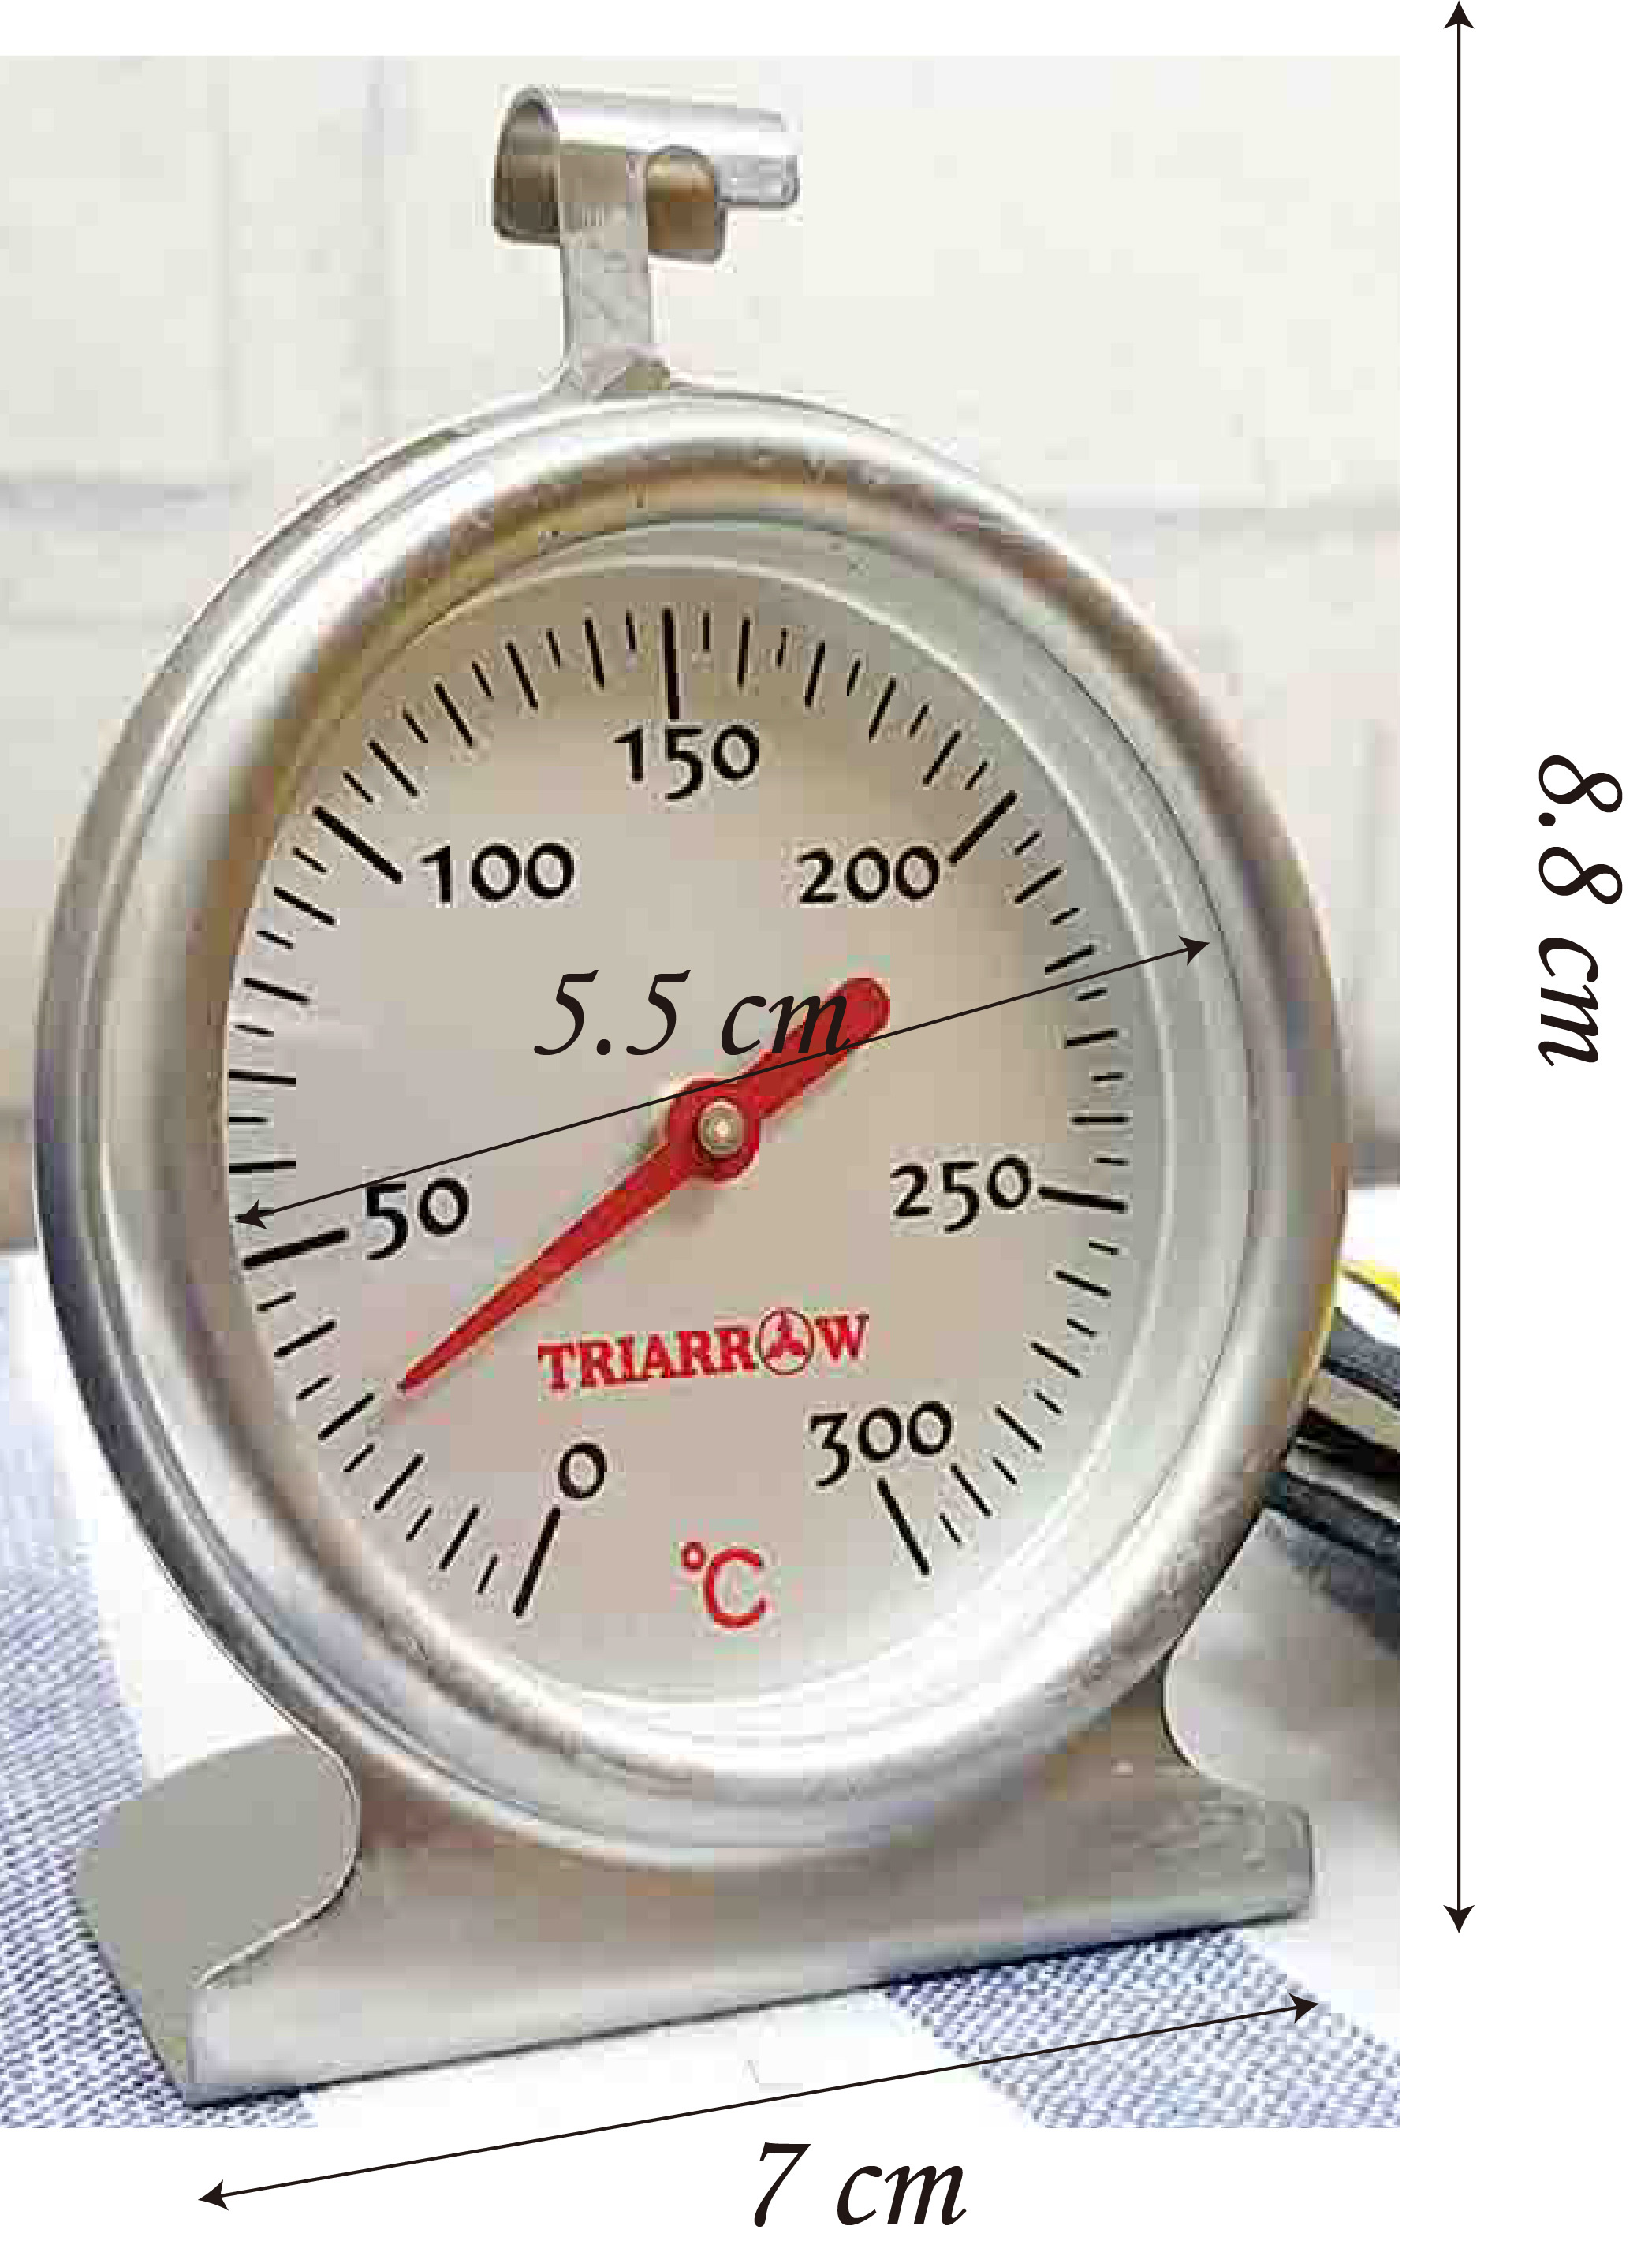 烤箱溫度計